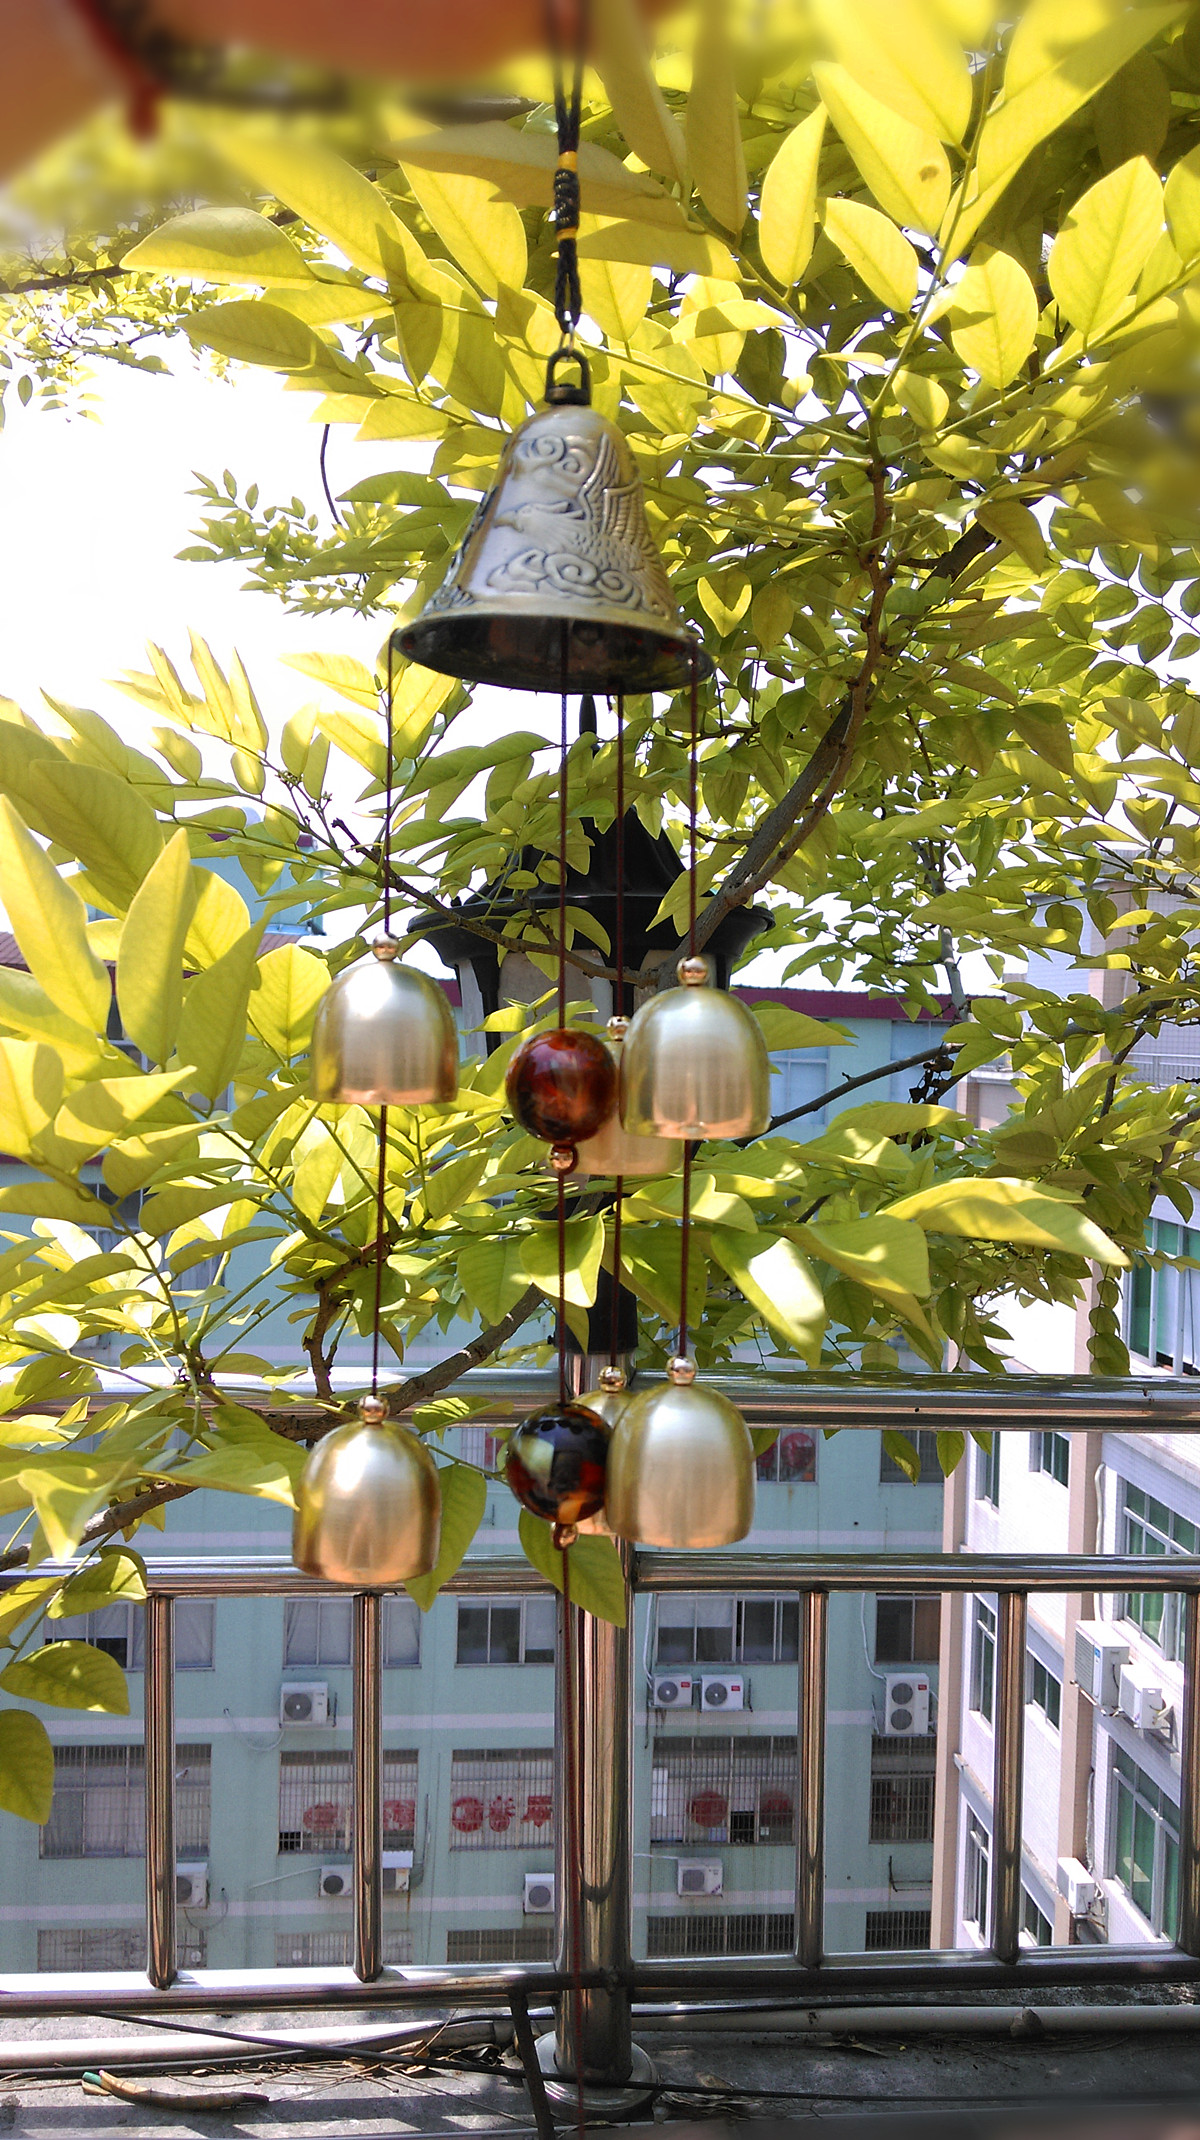 6-Bells-Copper-Clock-Yard-Garden-Outdoor-Living-Amazing-Wind-Chimes-974537